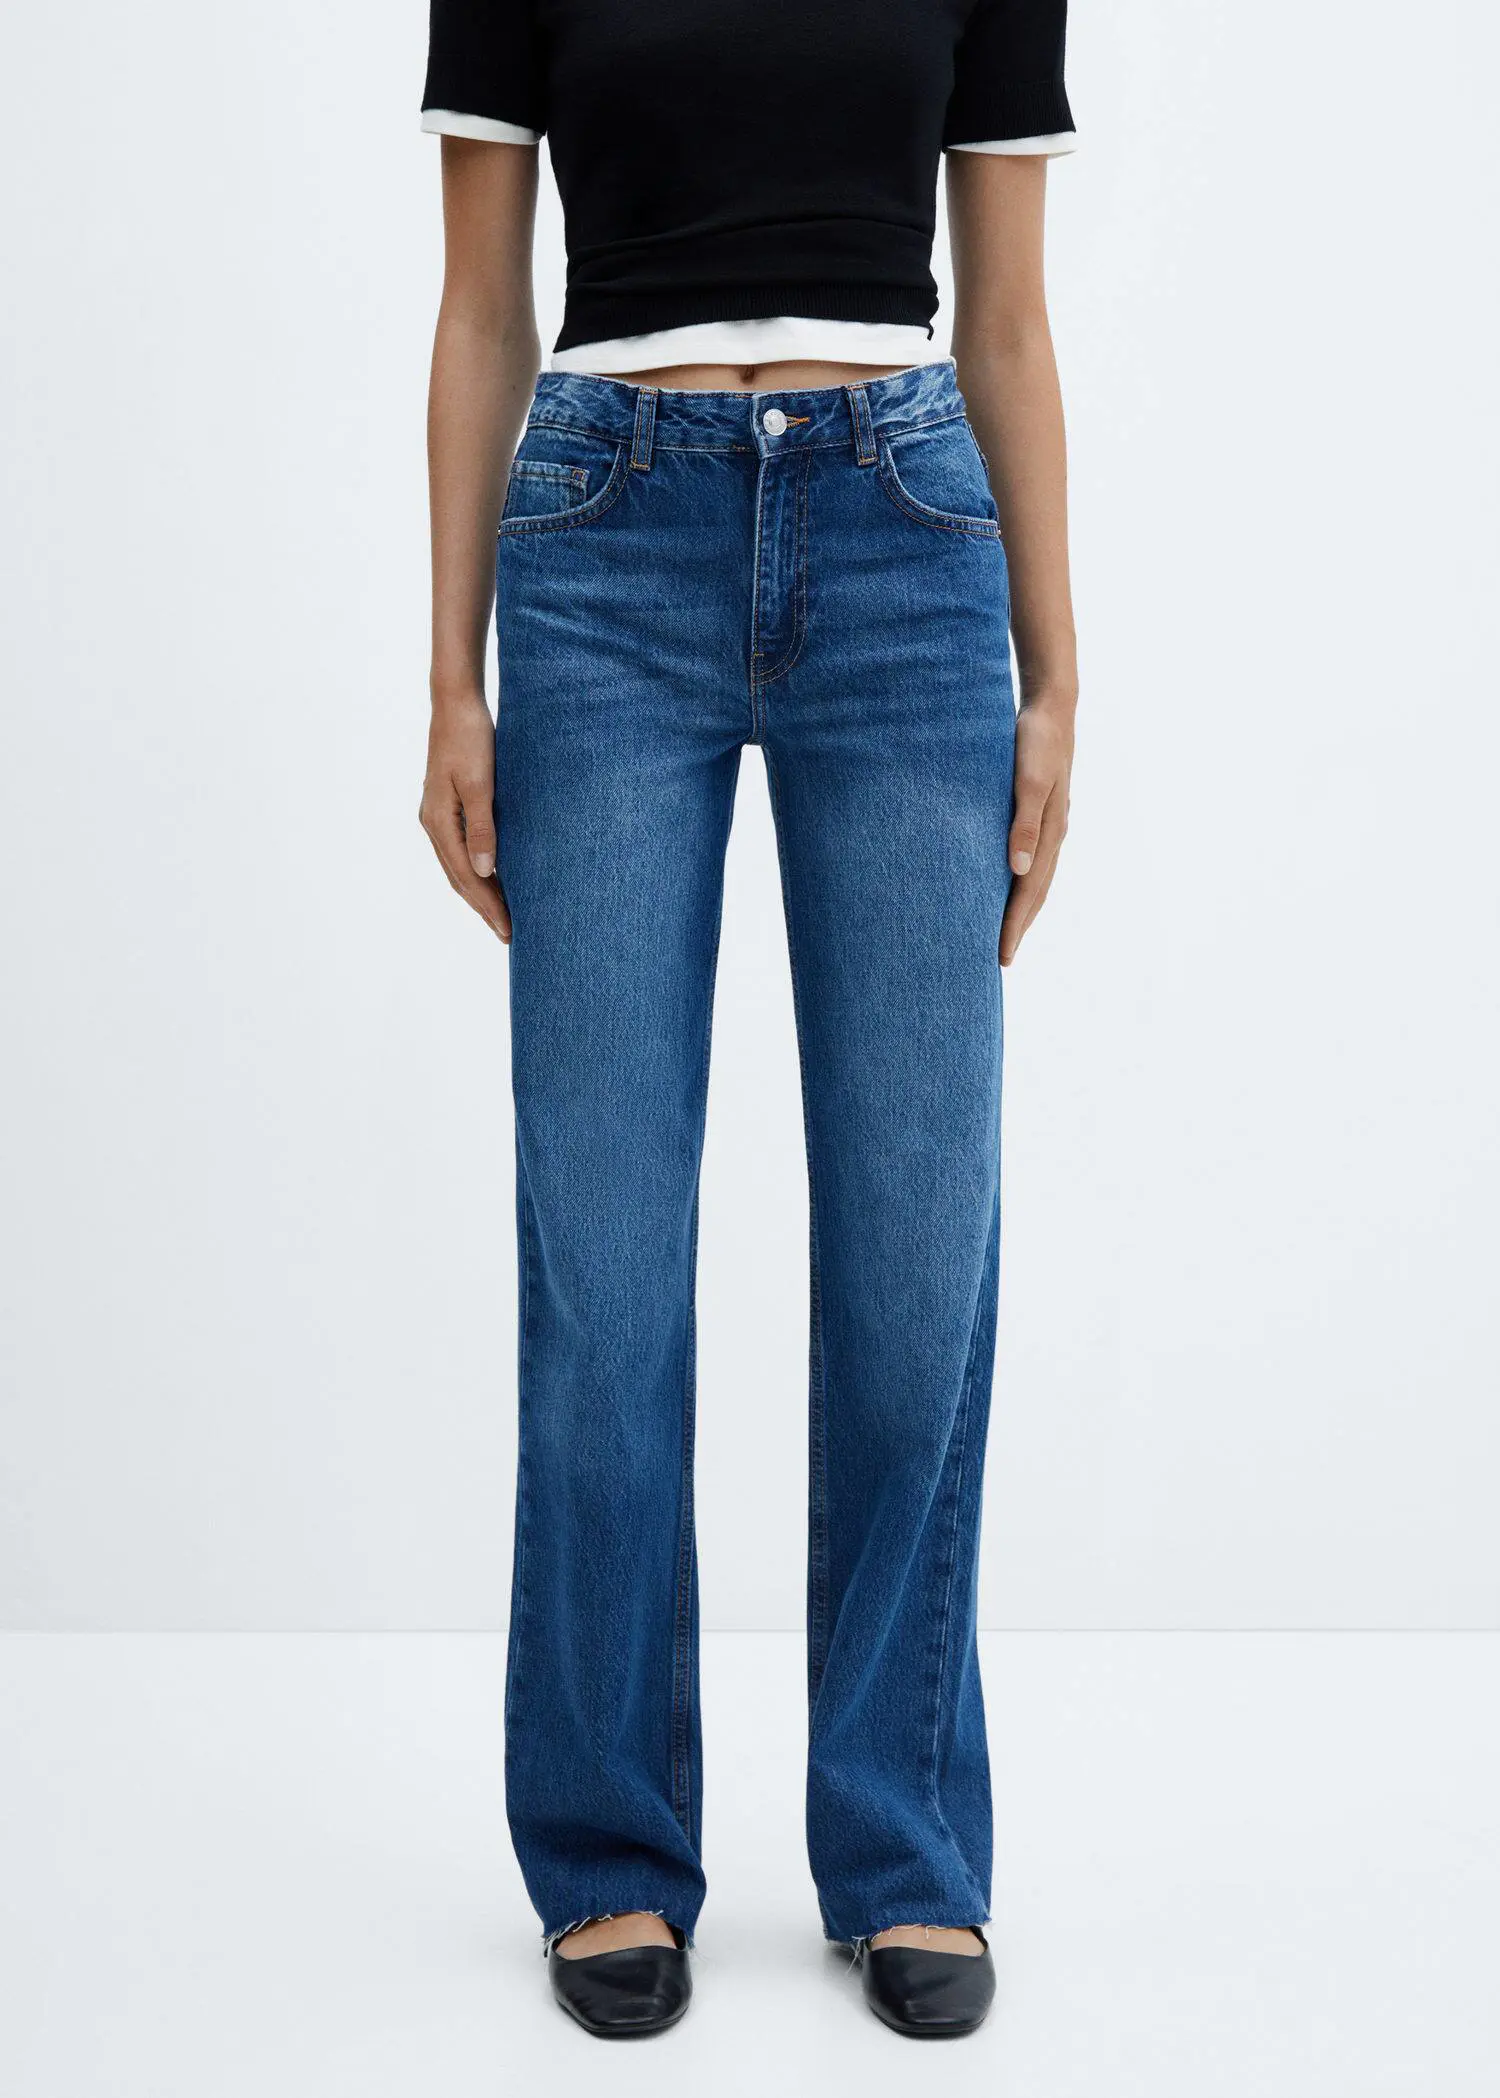 Mango Wideleg-Jeans mit mittlerer Bundhöhe. 2